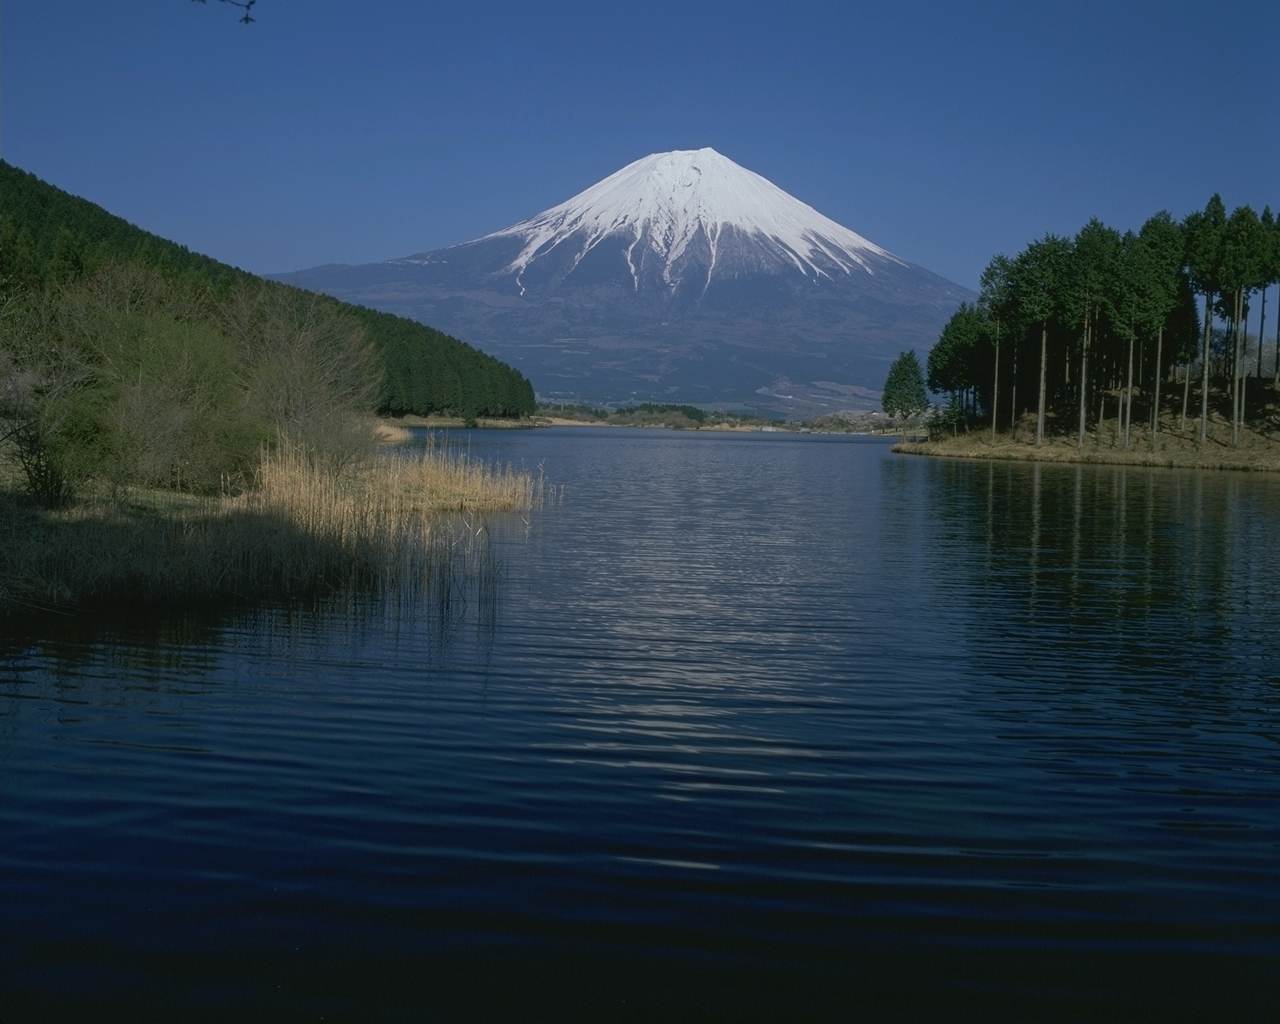 壁紙 富士山の壁紙 世界遺産 1280x1024 壁紙 富士山の壁紙 絶景世界遺産 Naver まとめ